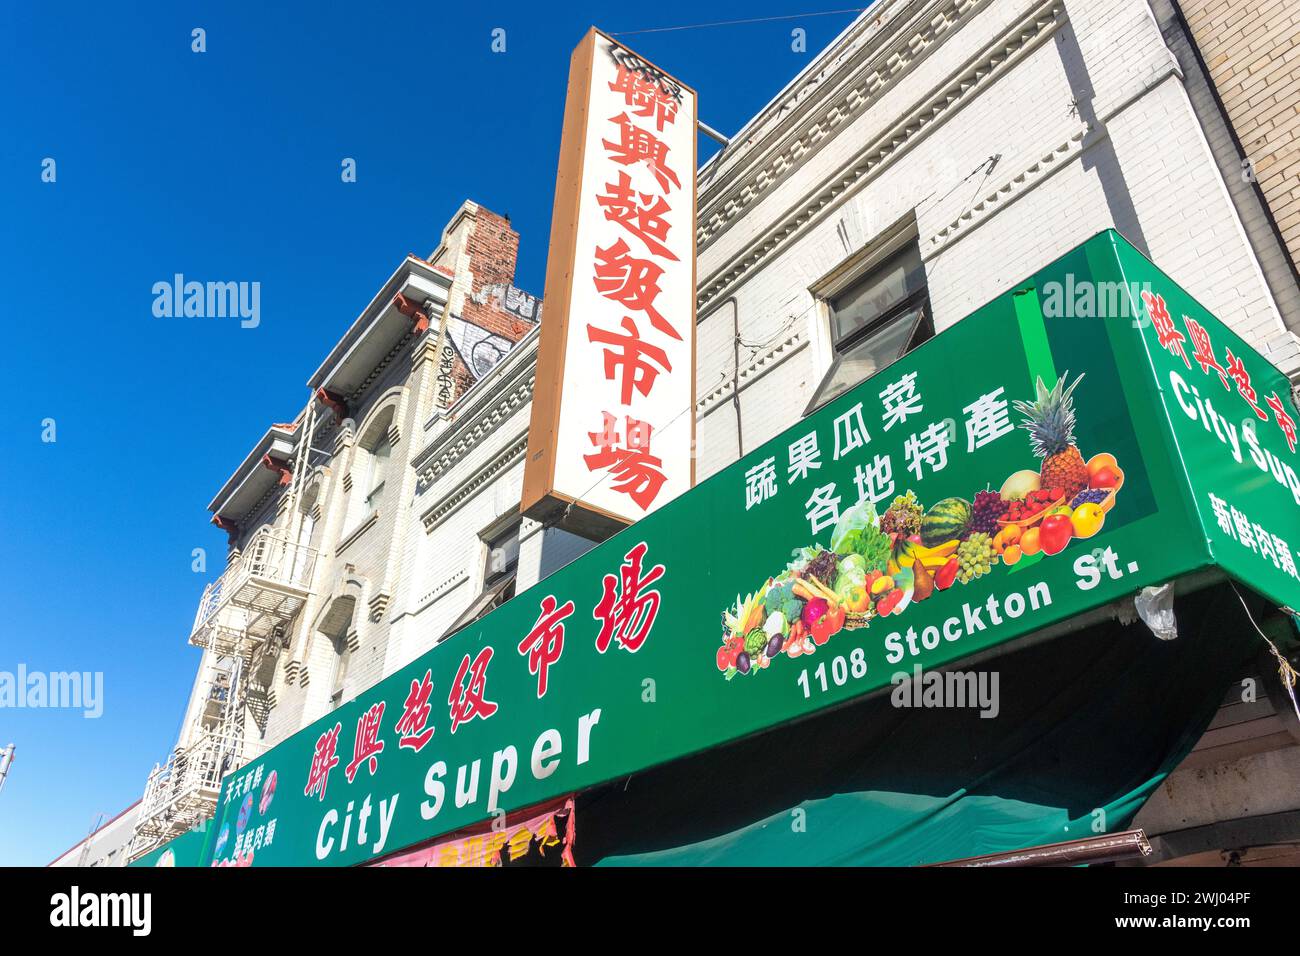 Chinesisches Obst- und Gemüseladen, Stockton Street, Chinatown, San Francisco, Kalifornien, Usa Stockfoto